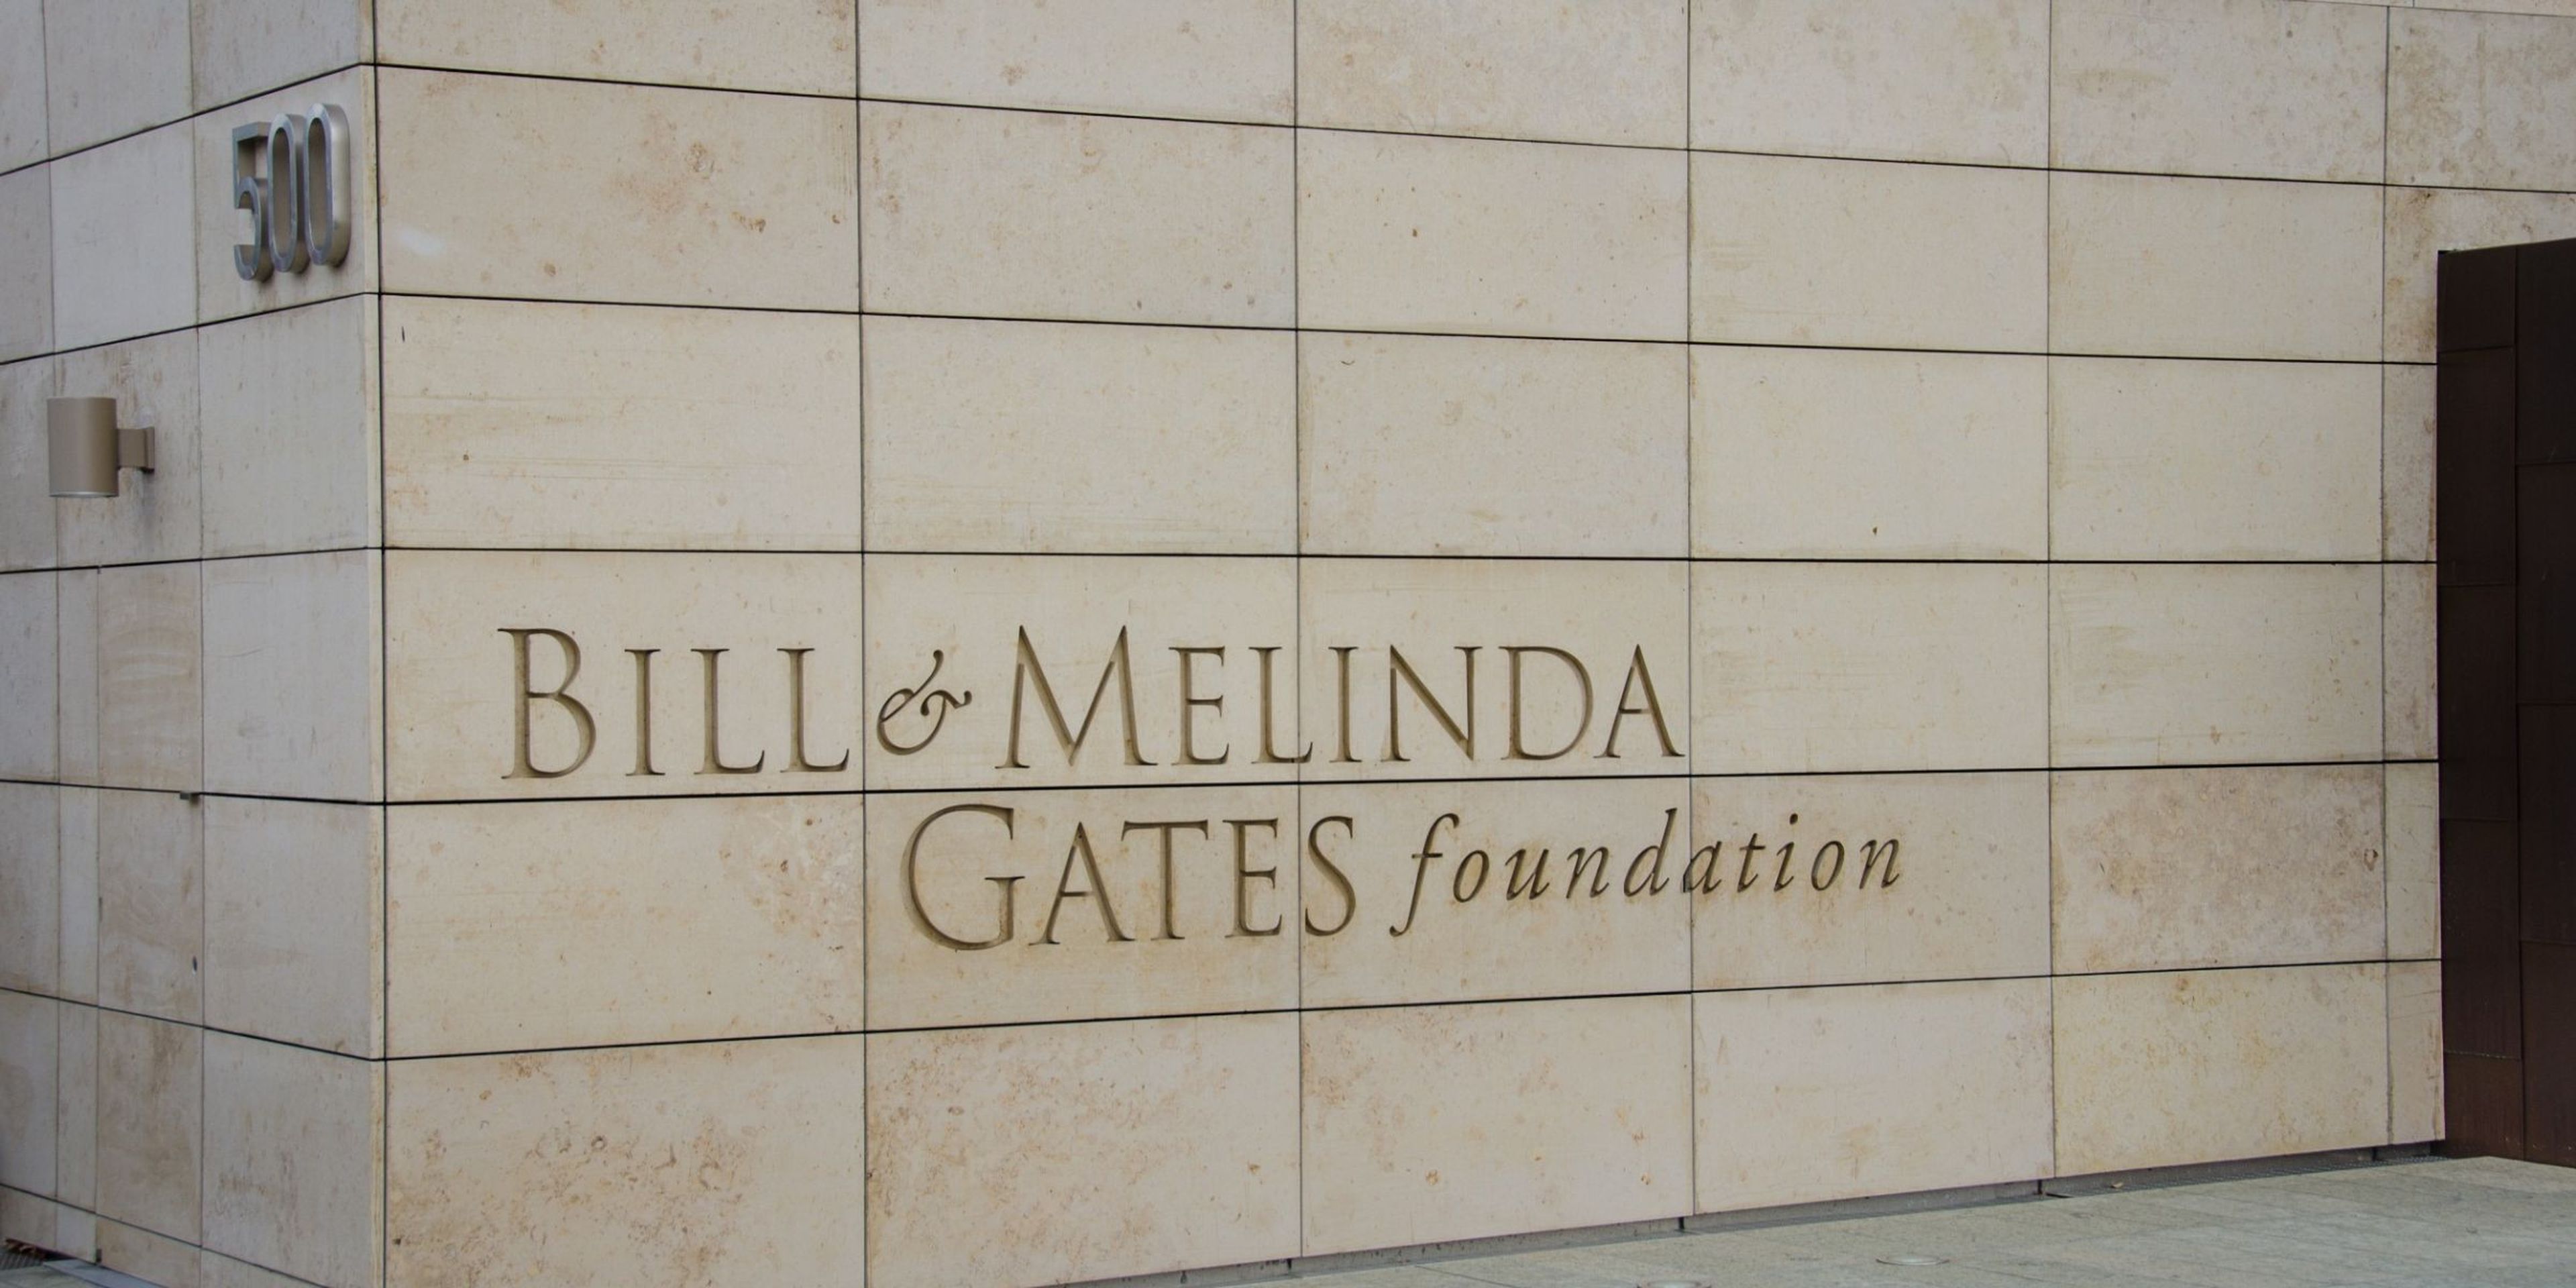 bill gates foundation